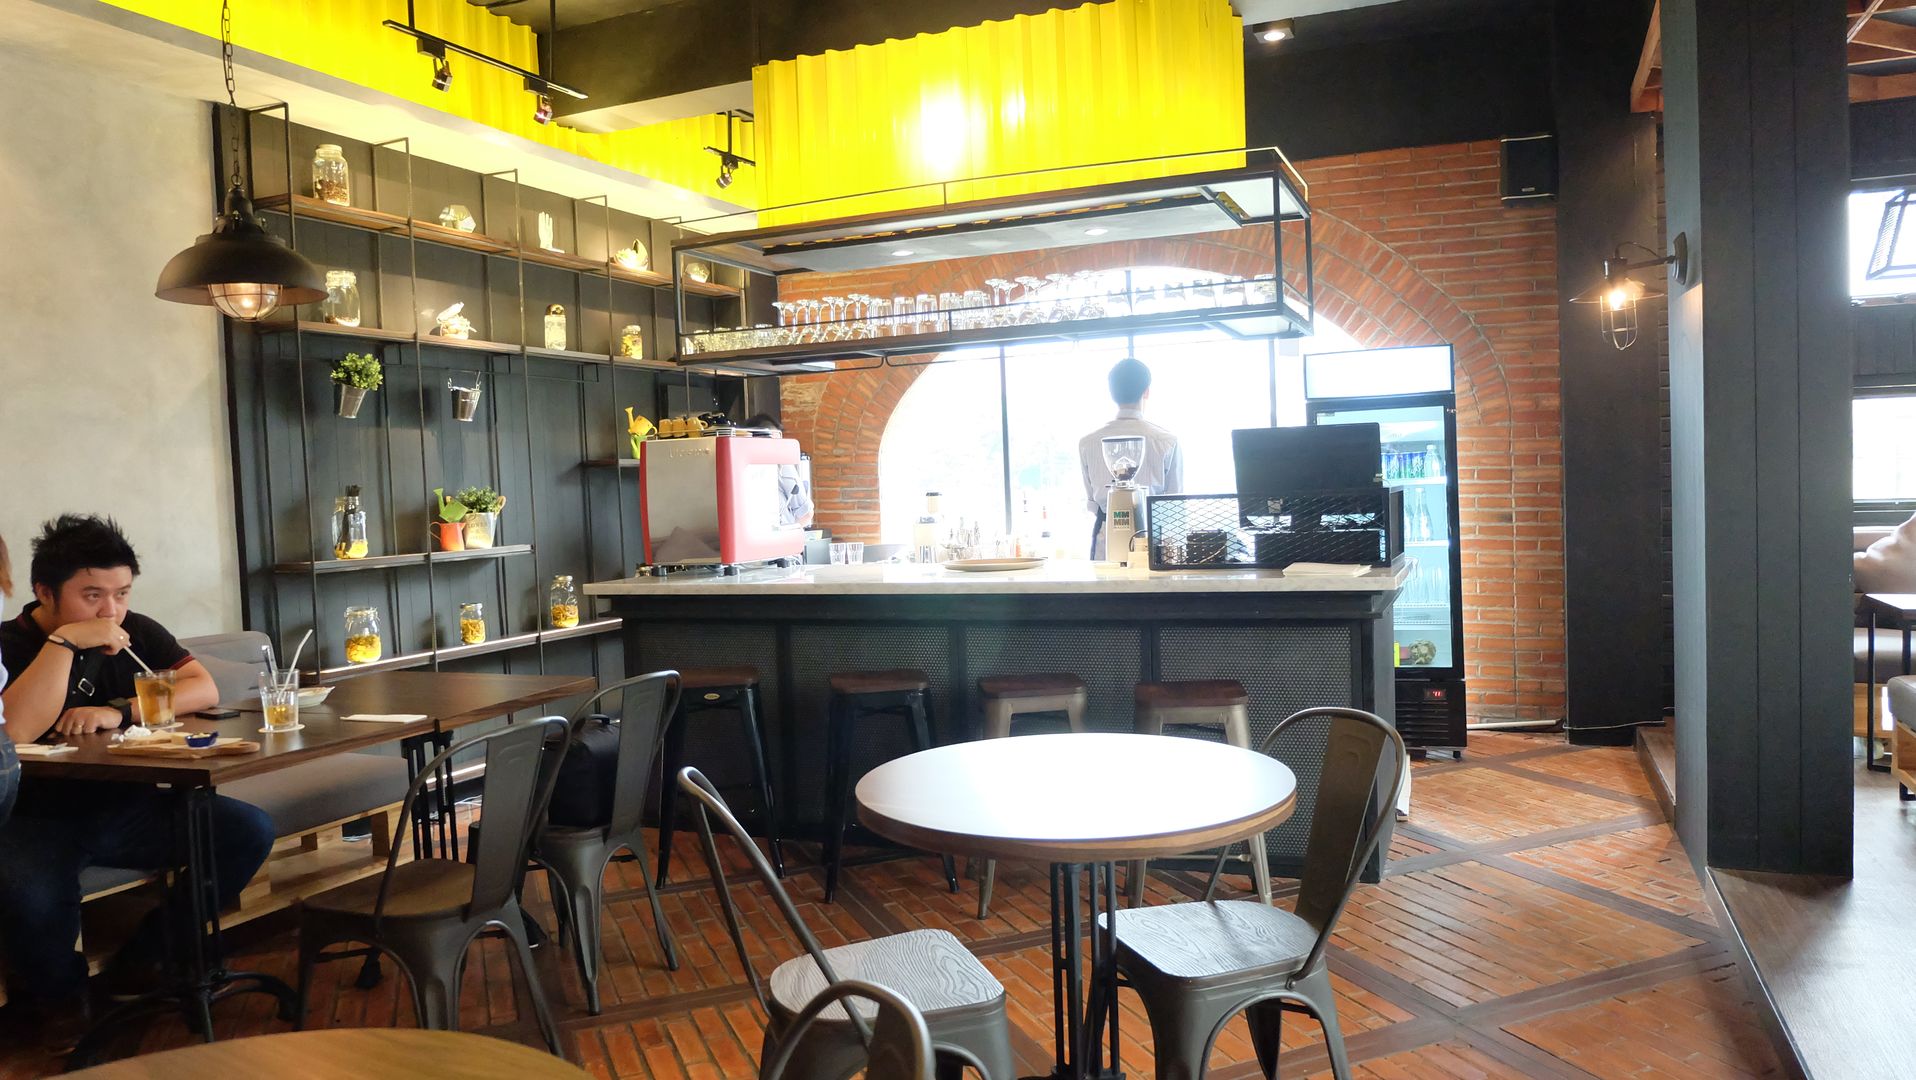 Cafe and Bar, Chromatic Interior Chromatic Interior Jardín interior Paisajismo de interiores